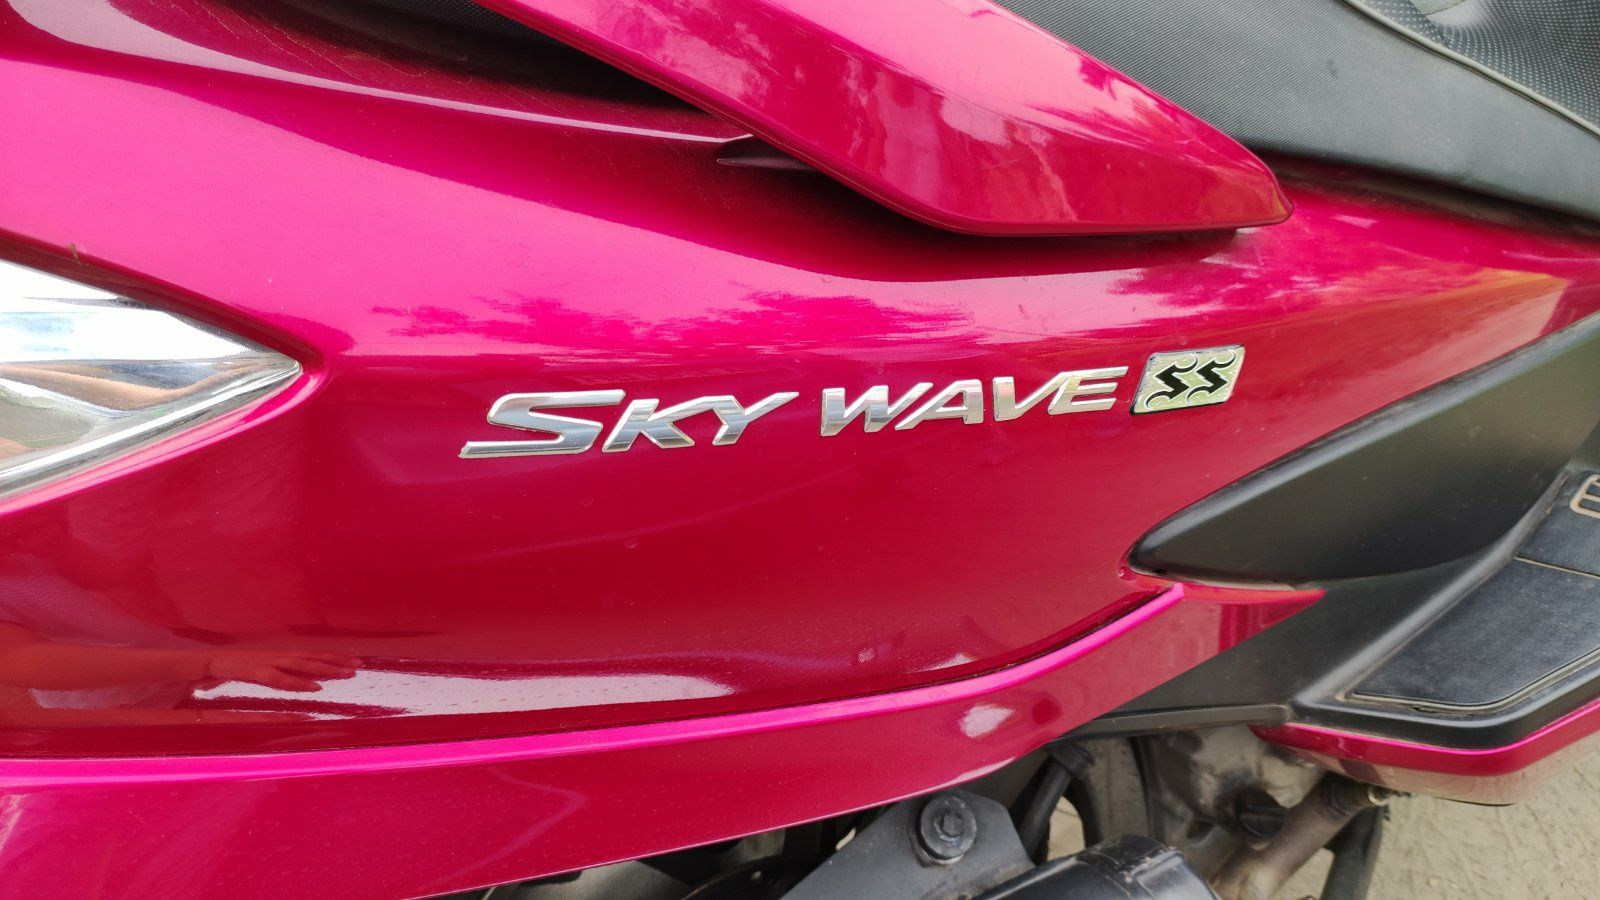 Suzuki skywave ss 250